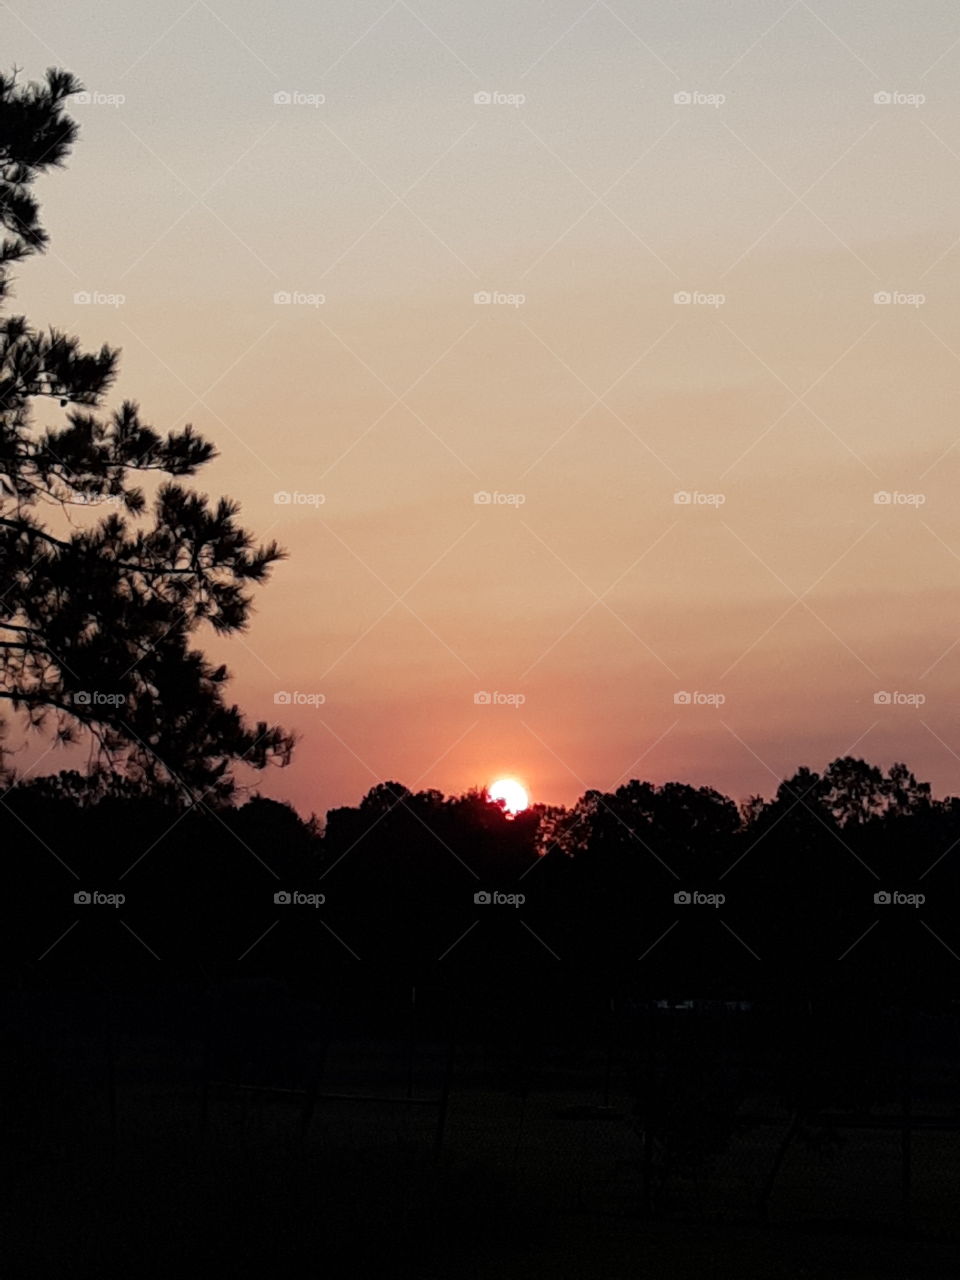 Louisiana sunrise